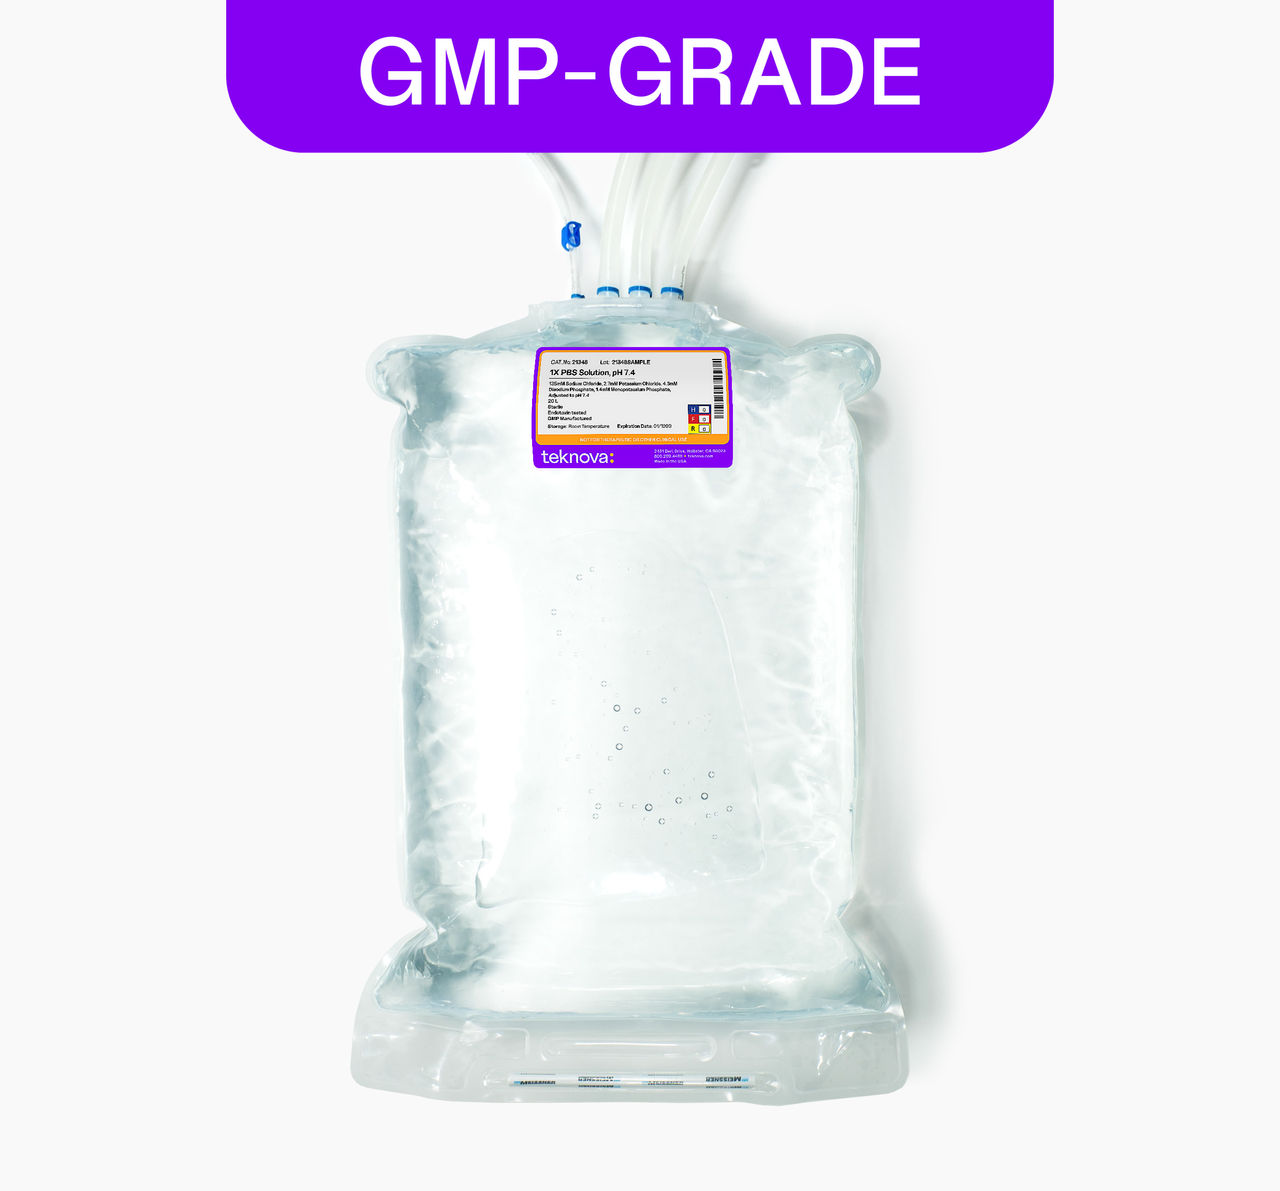 1X PBS Solution, pH 7.4 20L bag, GMP-grade